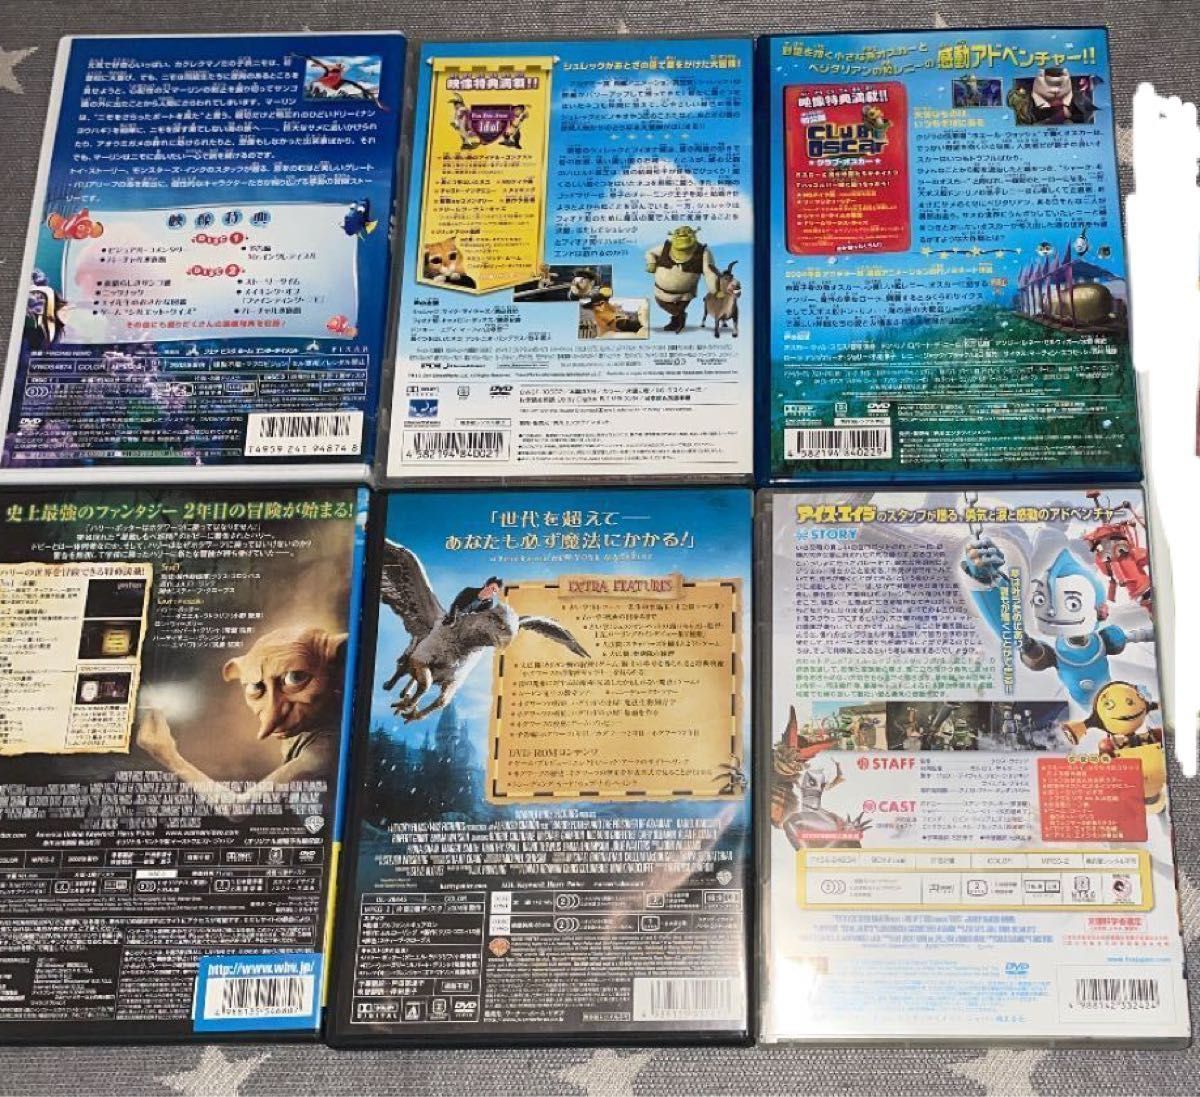 DVDセット(ディズニー、ハリーポッター、他)